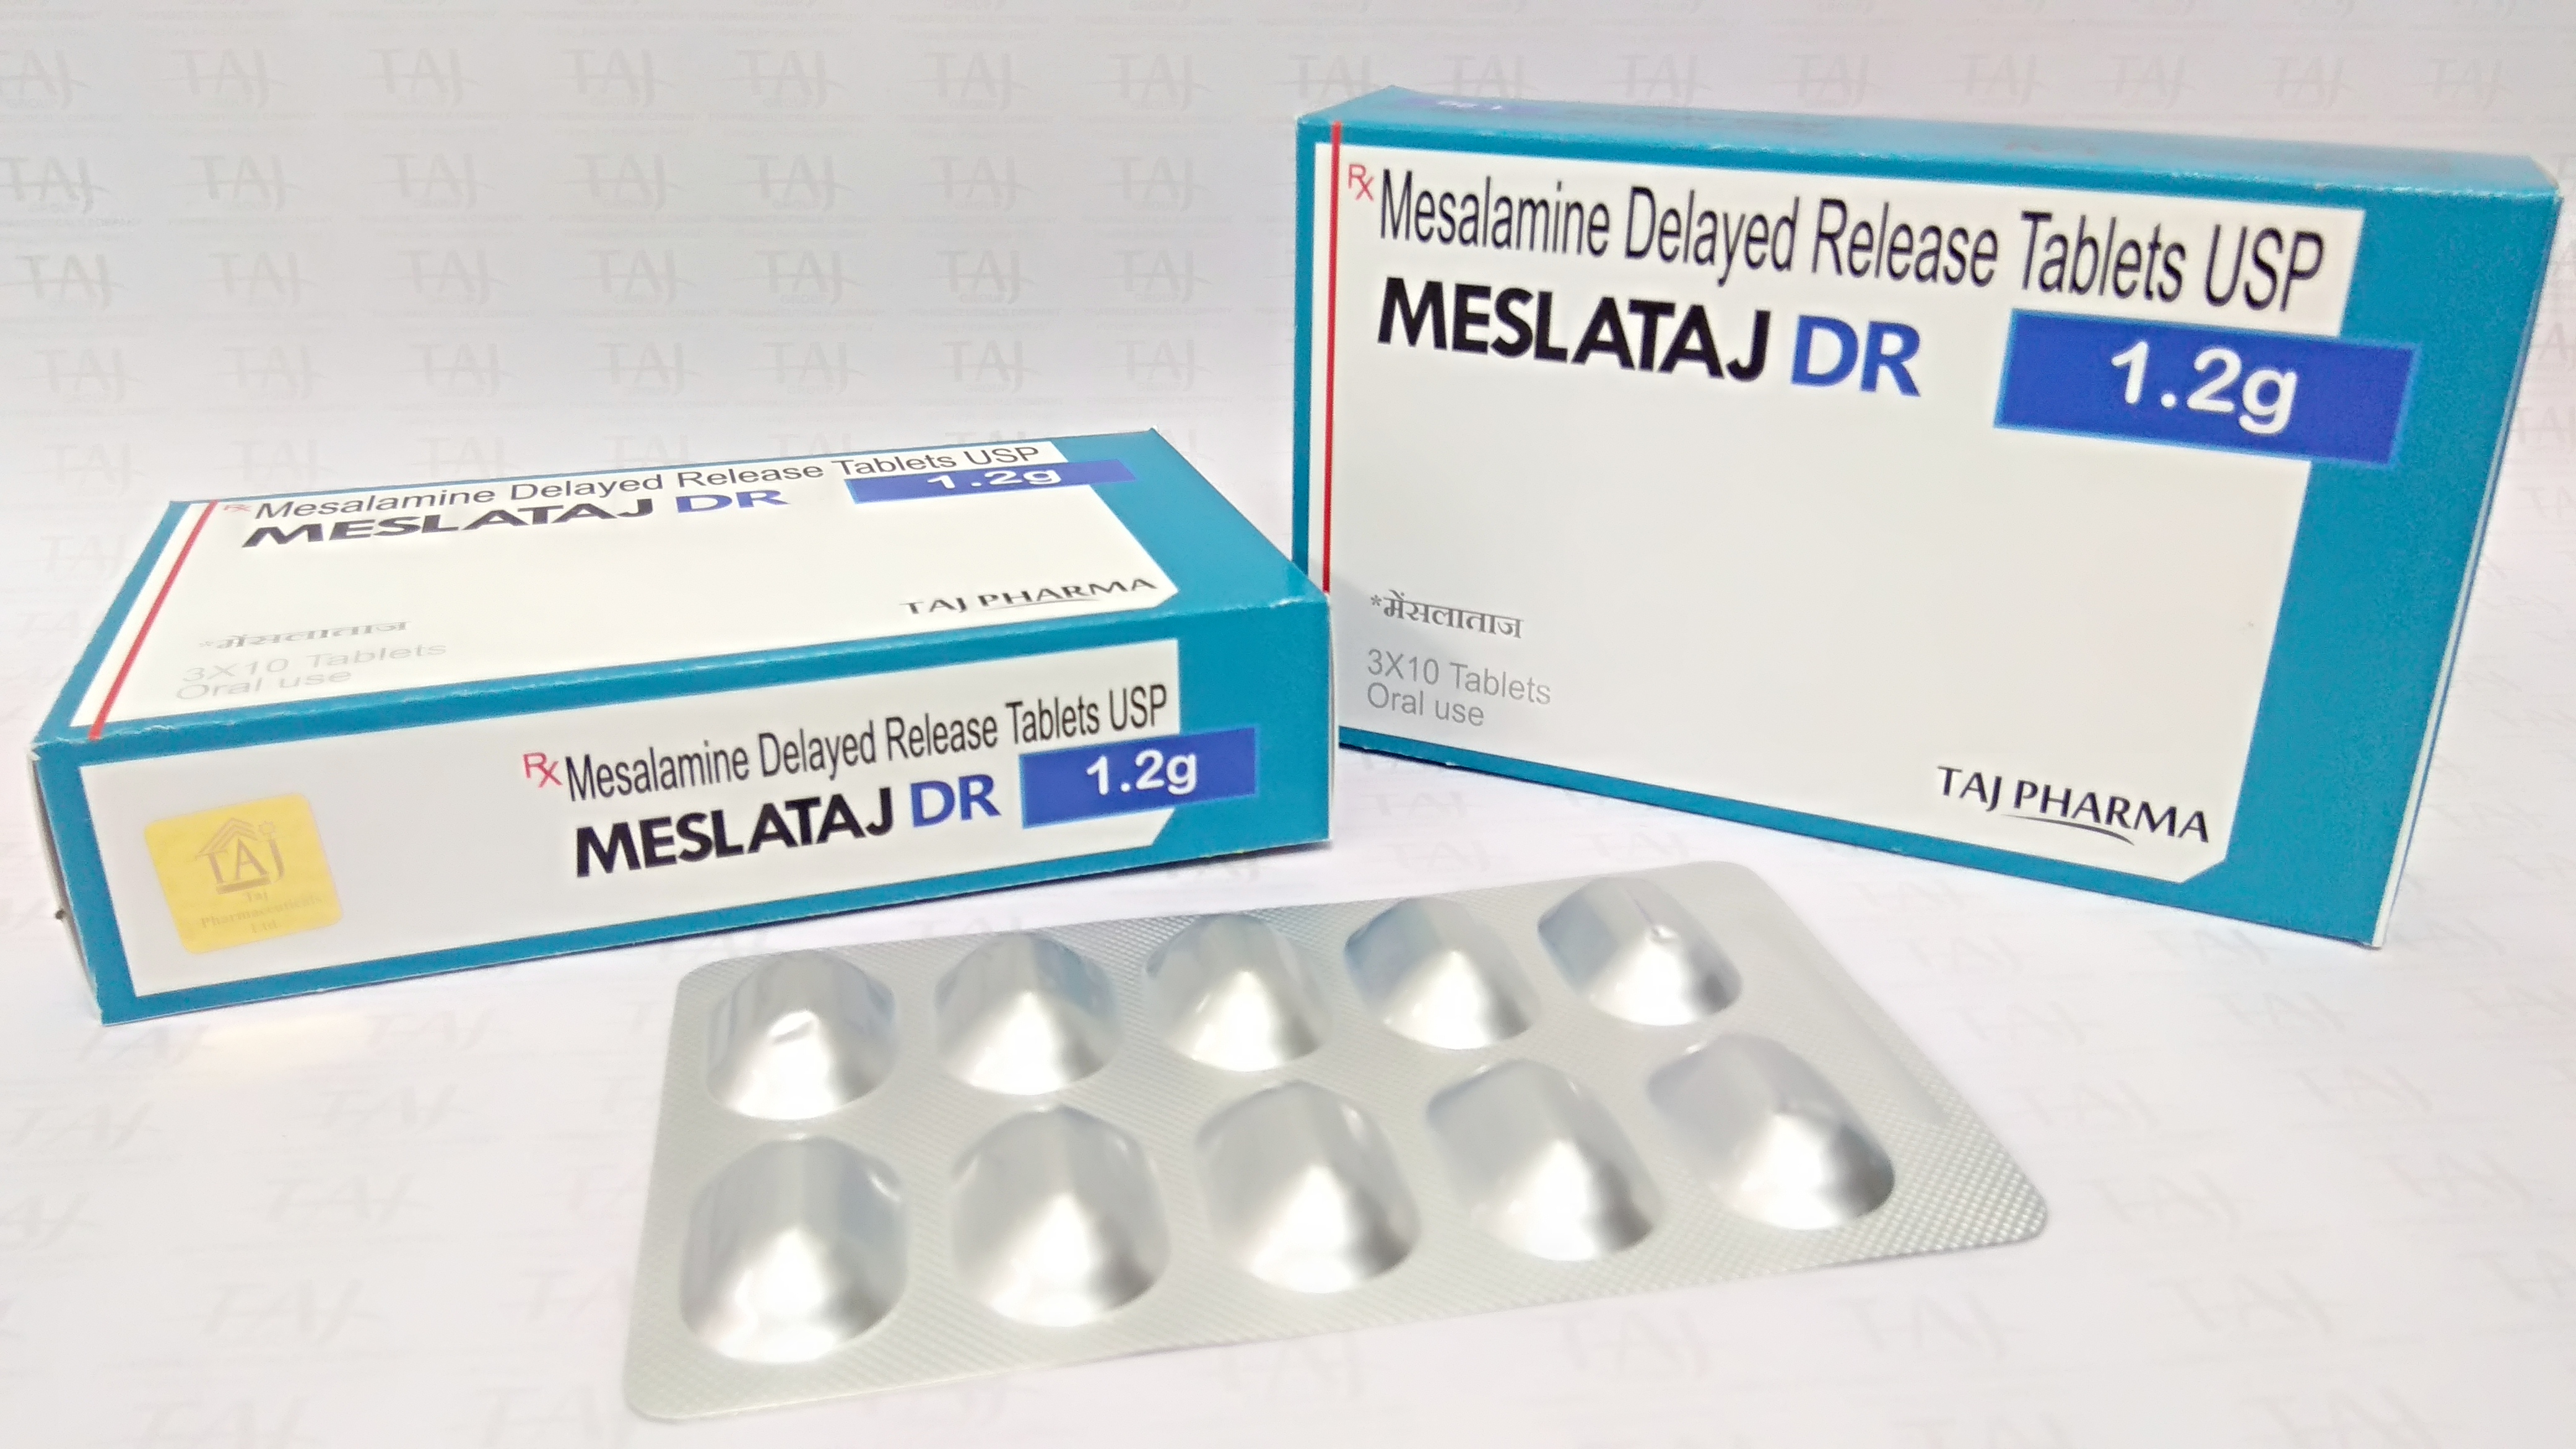 Mesalamine Delayed Release Tablets MESLATAJ DR 400MG, 800MG, 1.2G